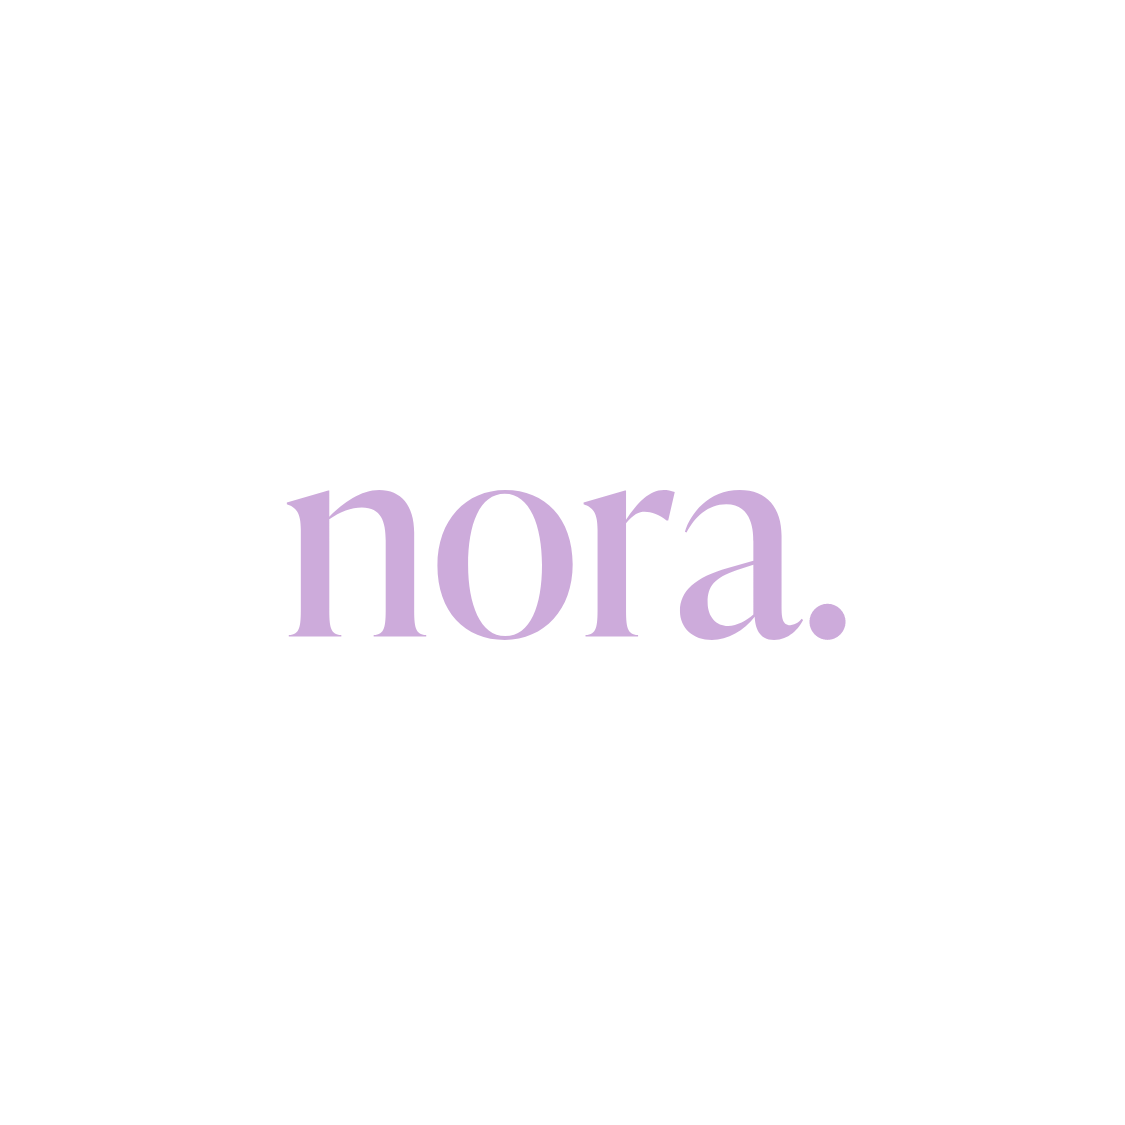 Nora 